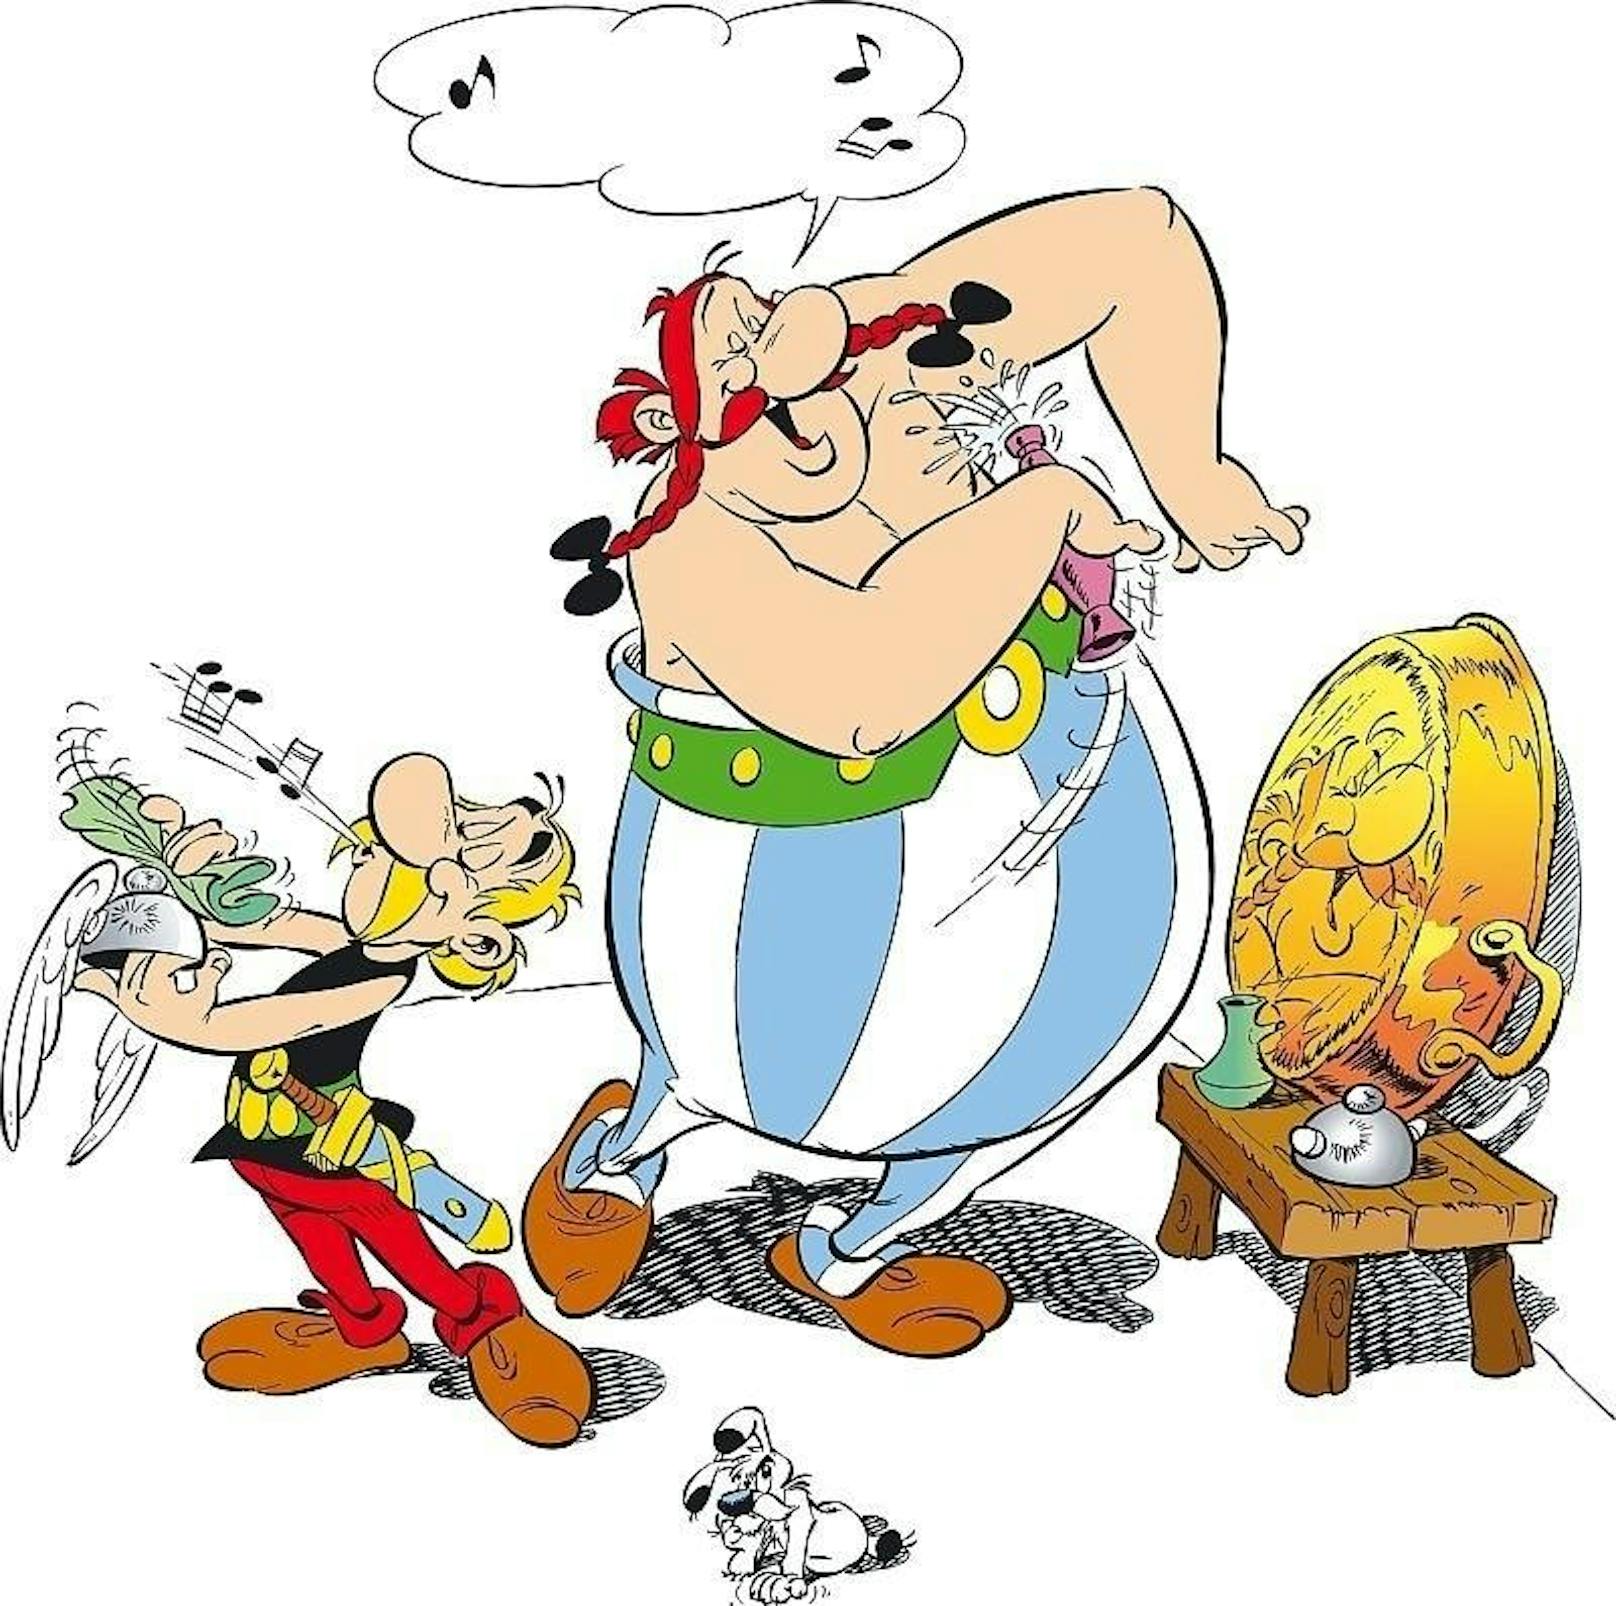 Weltweit wurden die Abenteuer von Asterix, Obelix und ihrem Dorf mehr als  370 Millionen Mal verkauft. Asterix wurde in 110 Sprachen und Dialekte übersetzt.